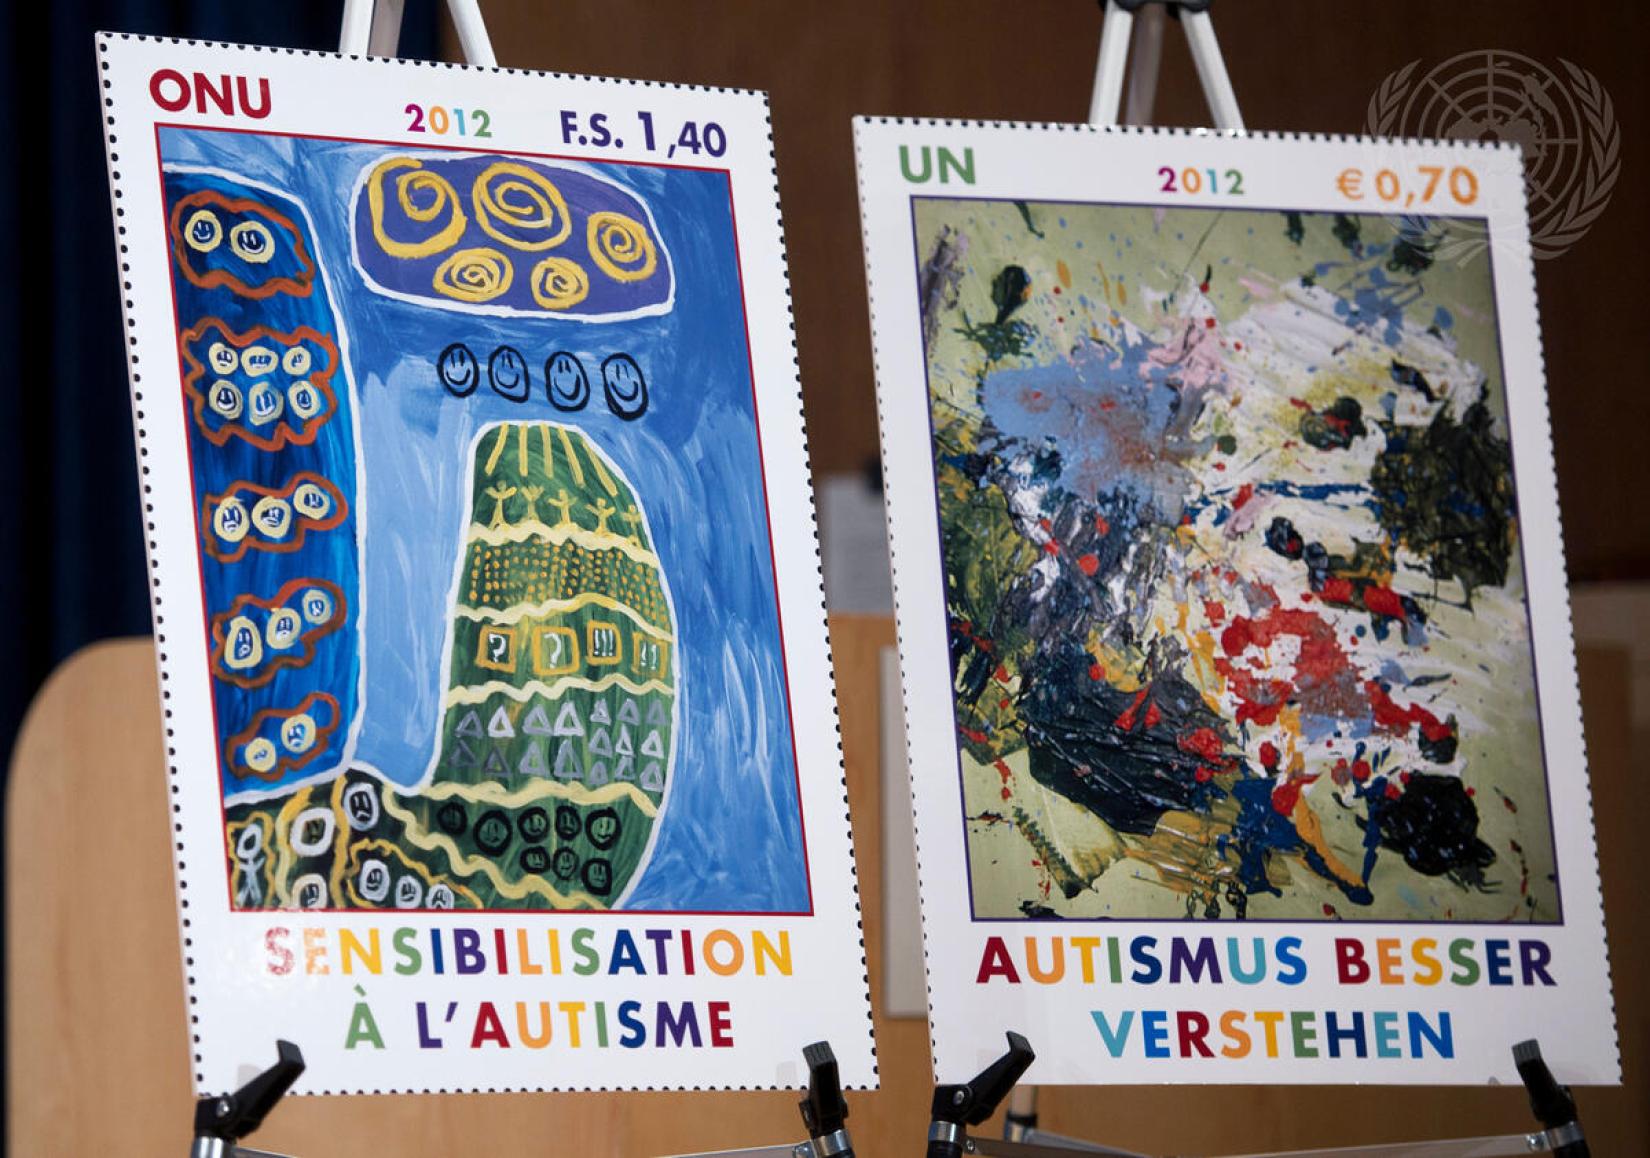 Selos que apresentam obras de arte de pessoas com autismo foram emitidos pela Administração Postal da ONU para celebrar o Dia Mundial de Conscientização sobre o Autismo, assinalado em 2 de abril desde 2007